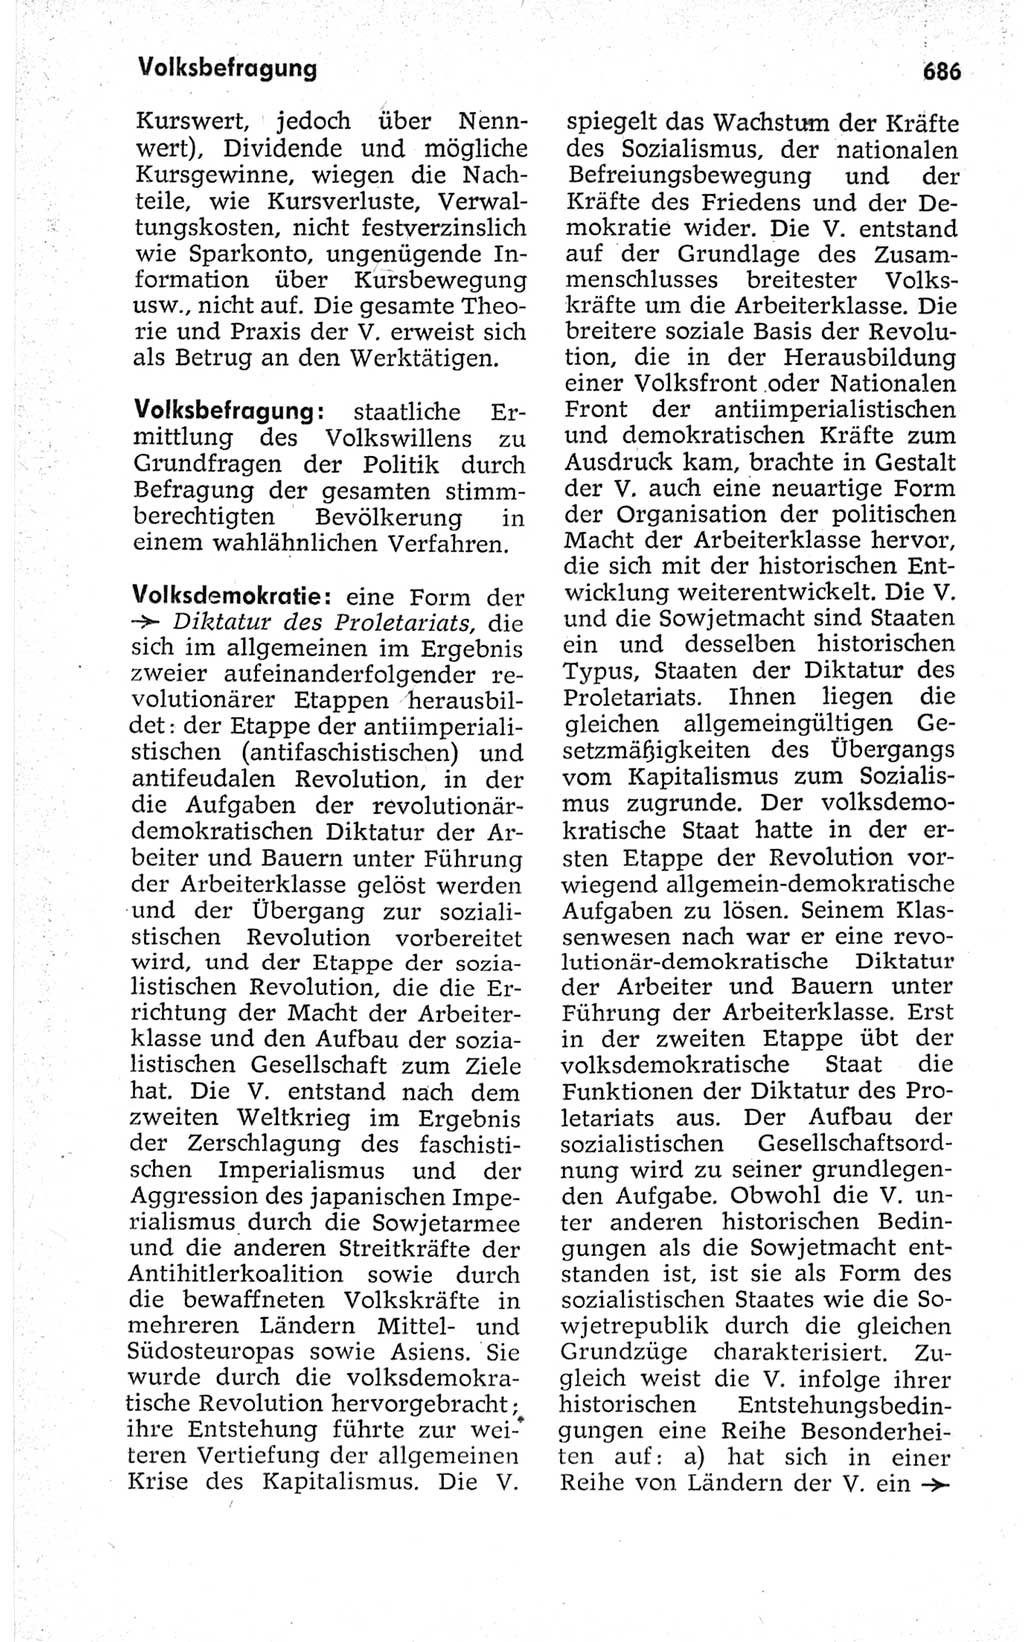 Kleines politisches Wörterbuch [Deutsche Demokratische Republik (DDR)] 1967, Seite 686 (Kl. pol. Wb. DDR 1967, S. 686)